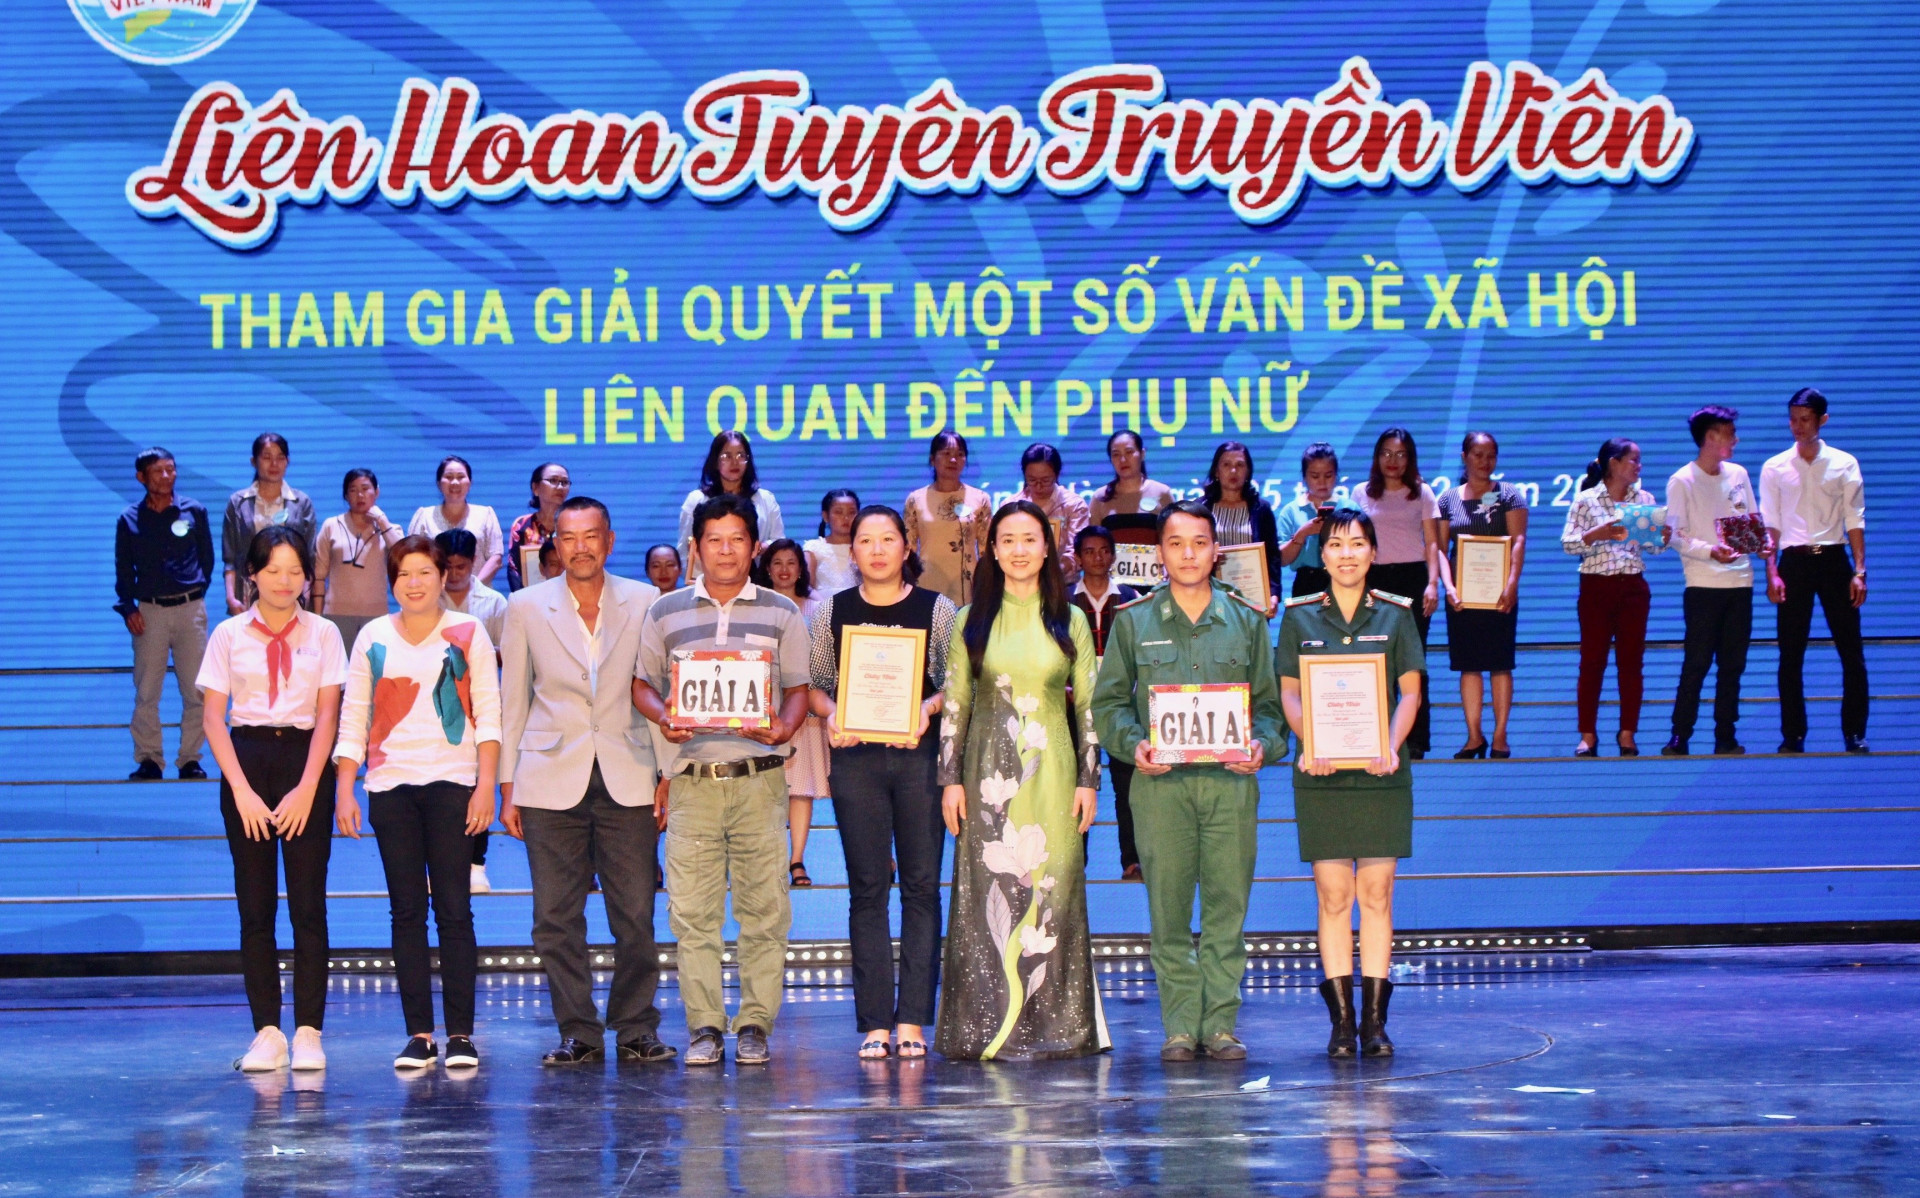 2 giải A cho 2 đội thuộc Hội Phụ nữ Bộ đội Biên phòng tỉnh và Hội LHPN thị xã Ninh Hòa, 2 giải B và 5 giải C tại Liên hoan tuyên truyền viên “Tham gia giải quyết một số vấn đề xã hội liên quan đến phụ nữ”